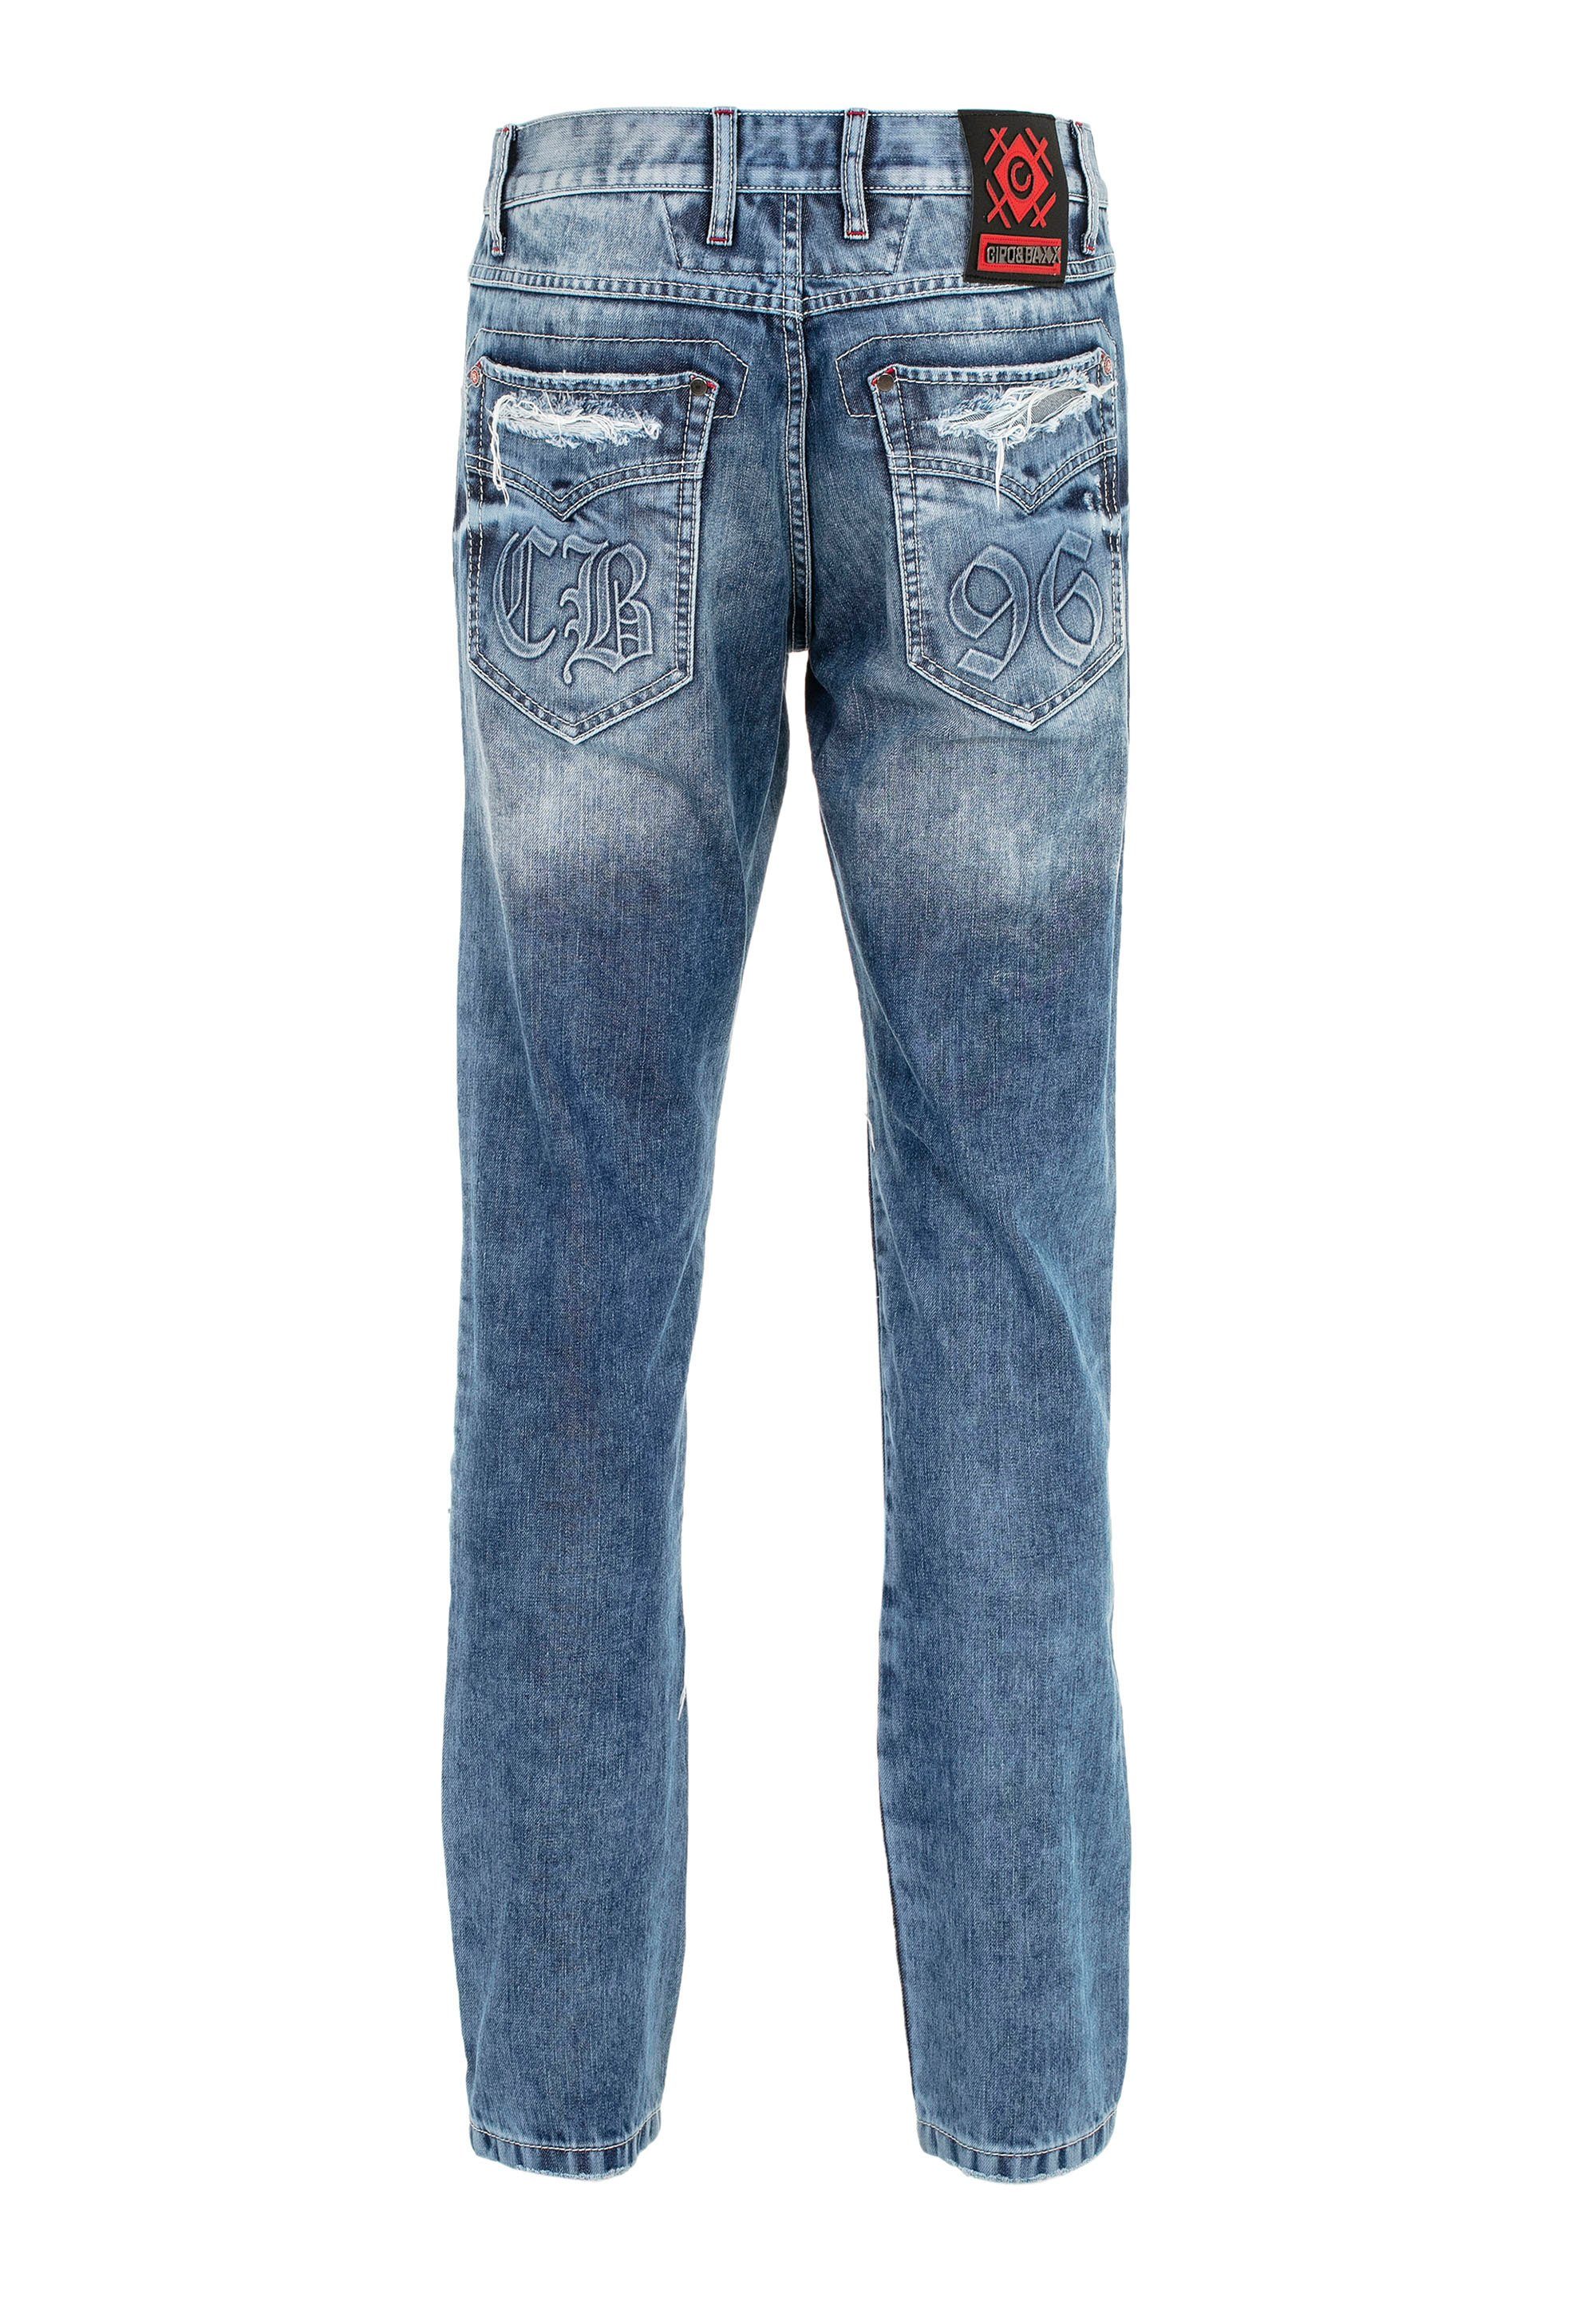 Riss-Design im Baxx Jeans & Cipo auffälligen Bequeme